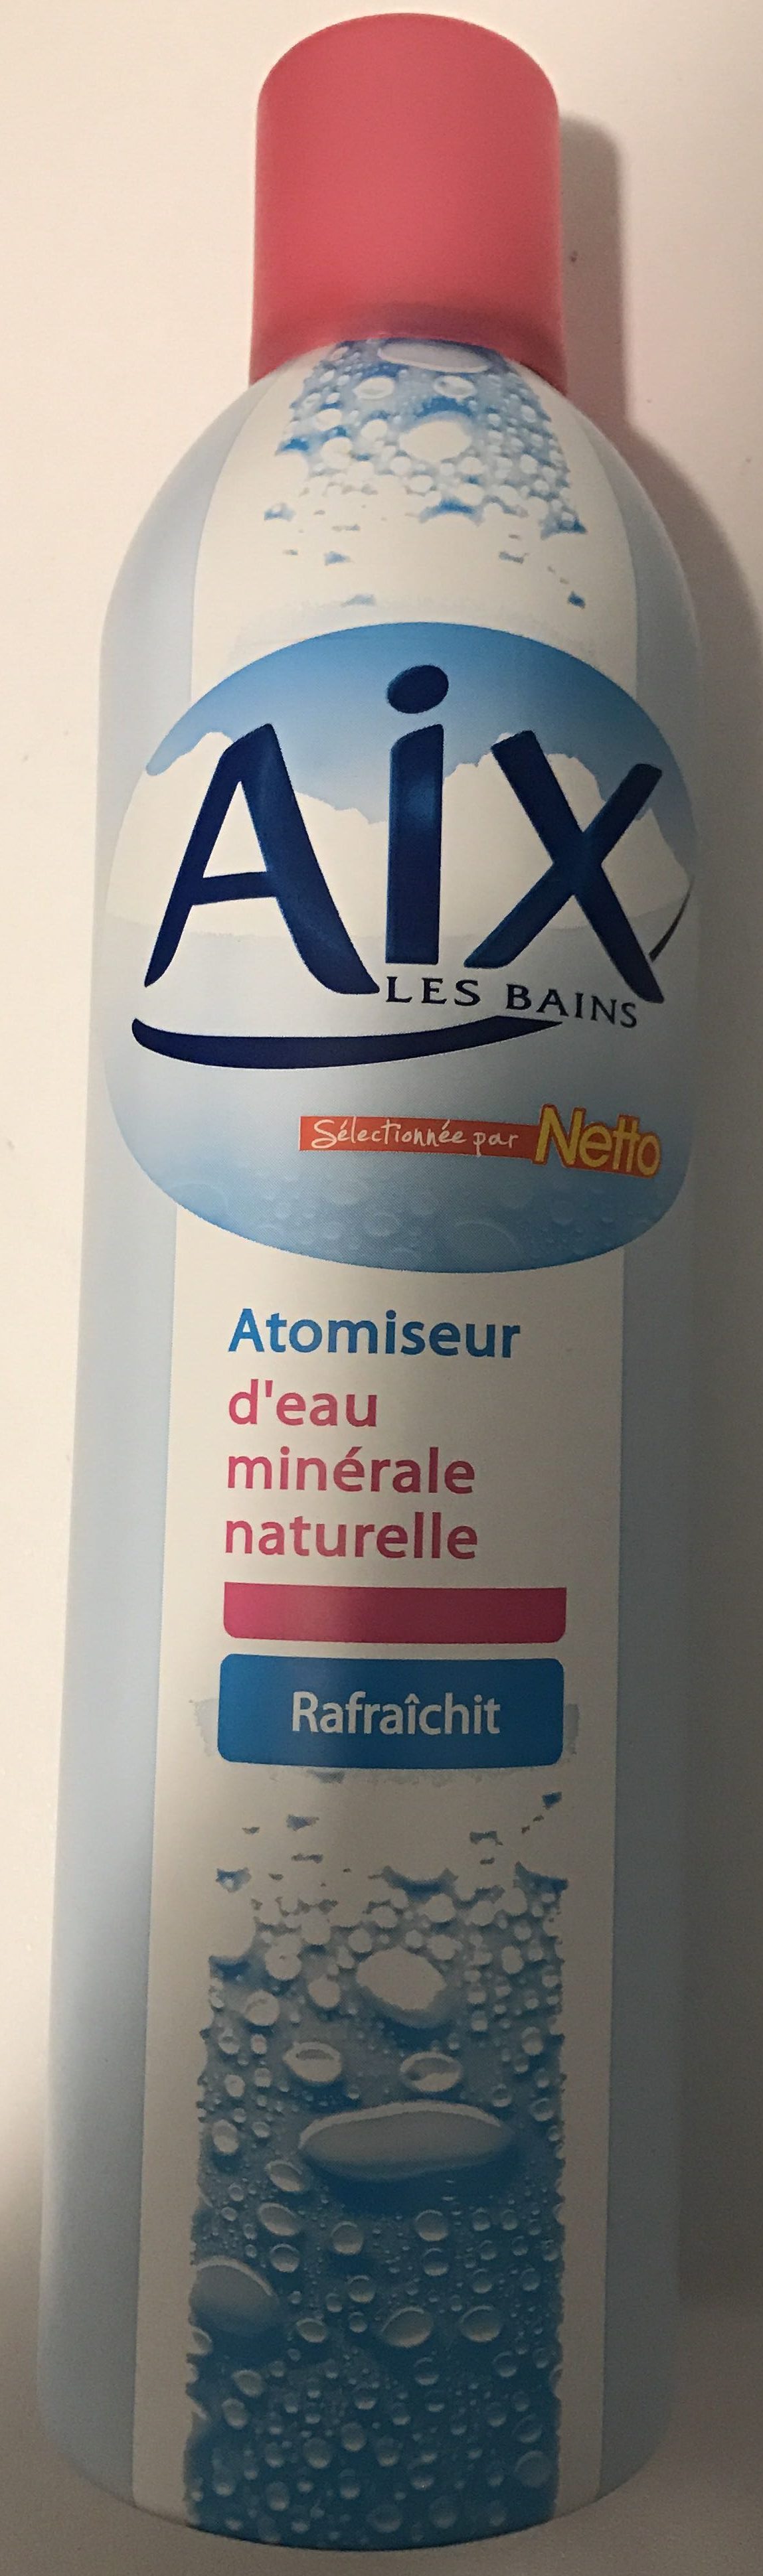 Atomiseur d'eau minérale naturelle - Produit - fr